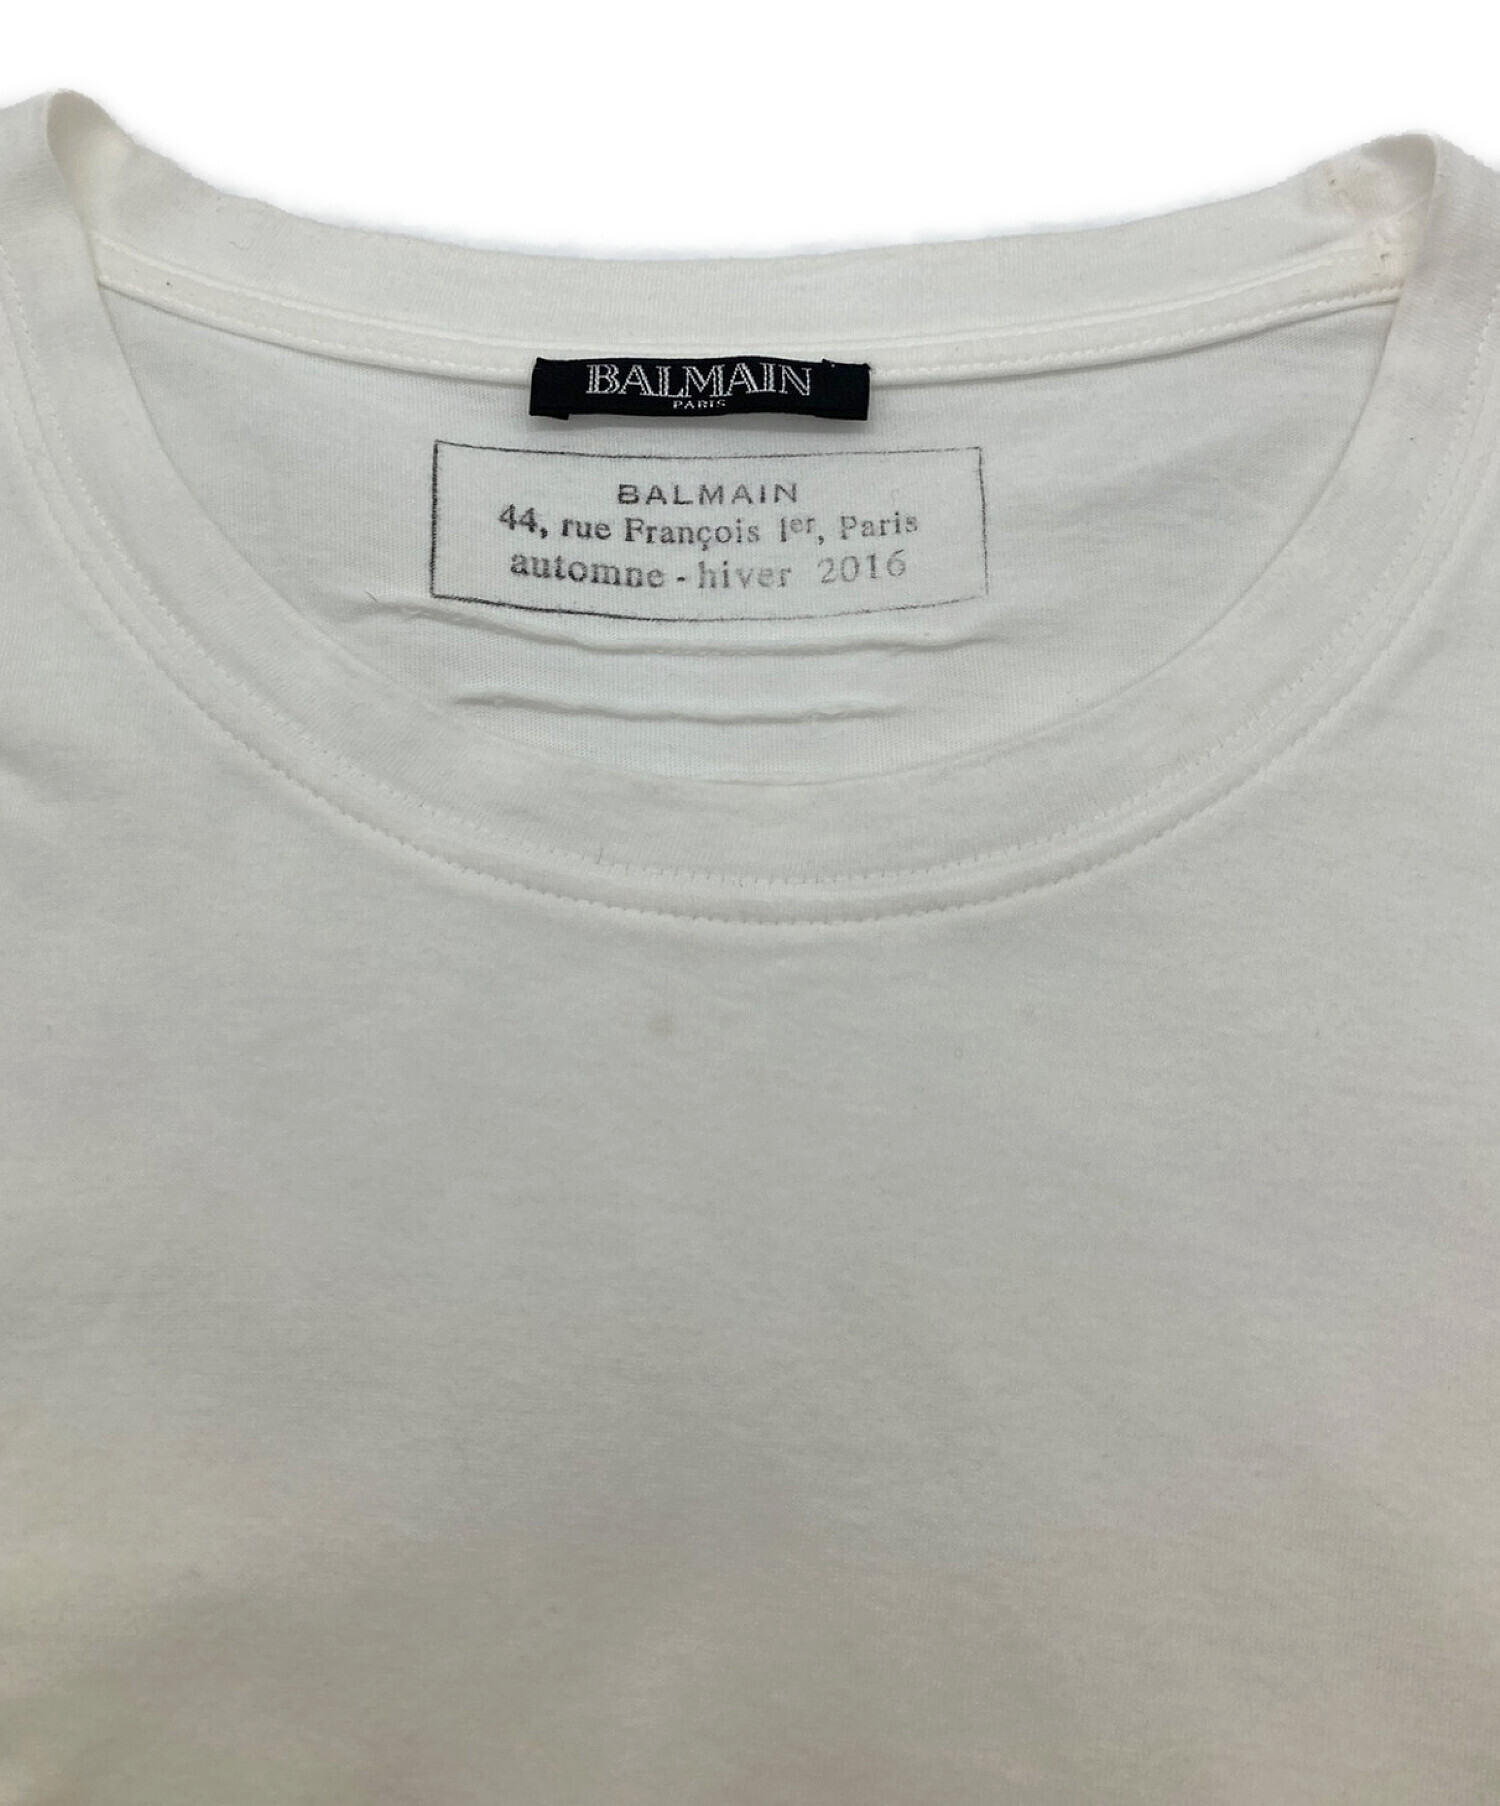 BALMAIN (バルマン) ロゴTシャツ ホワイト サイズ:S